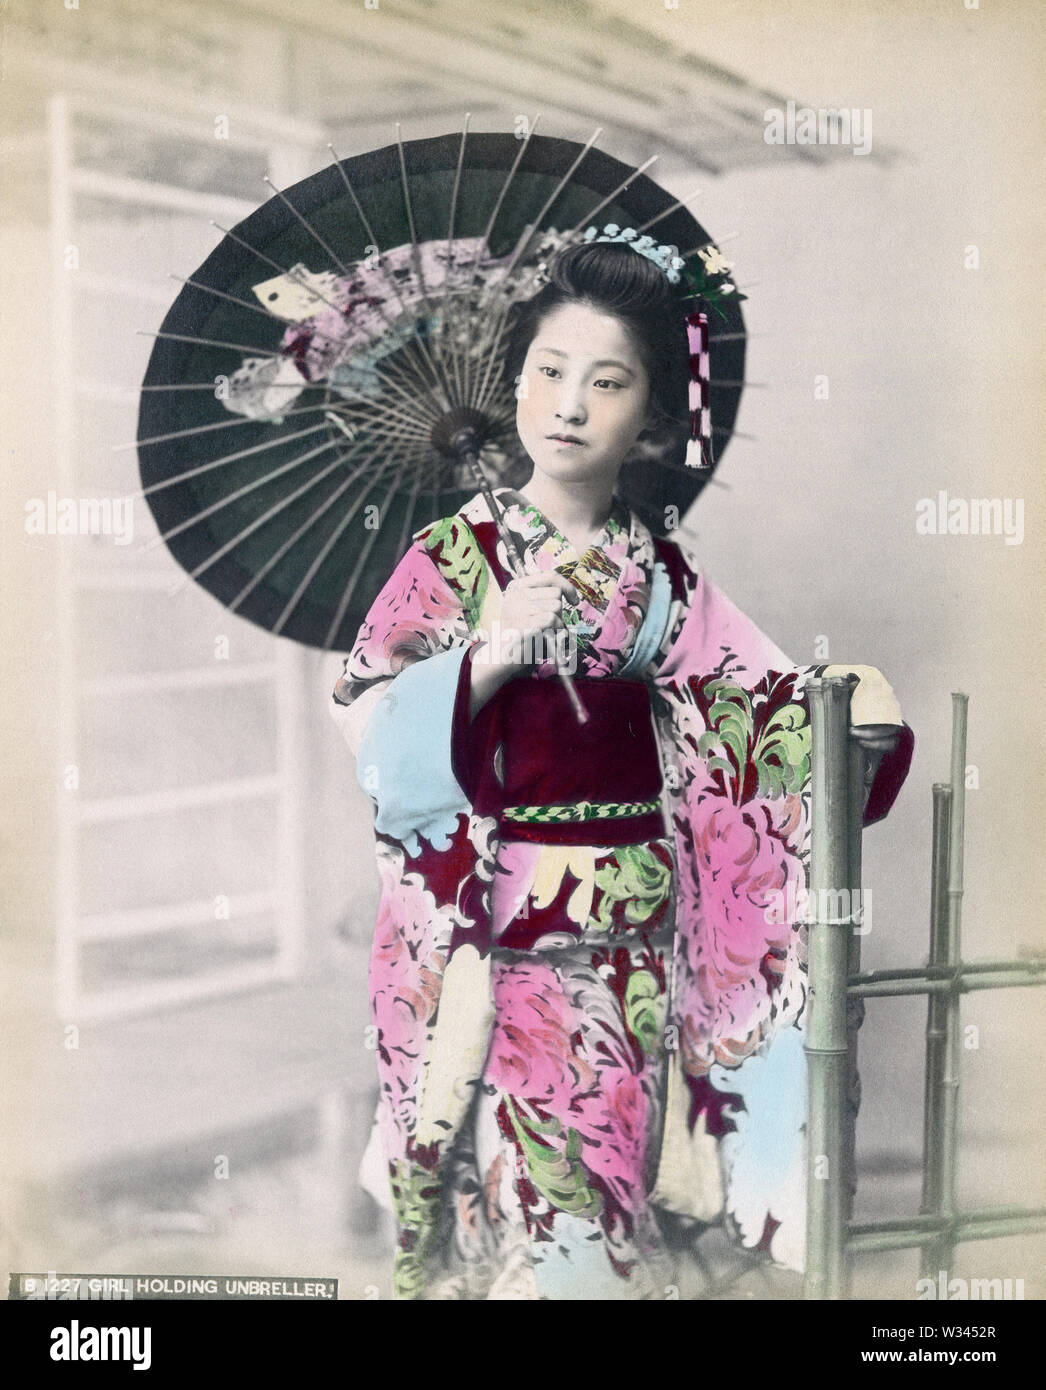 [1890s Japan - Japanische Frau mit Sonnenschirm] - Japanische Frau im Kimono mit Papier Sonnenschirm. 19 Vintage albumen Foto. Stockfoto